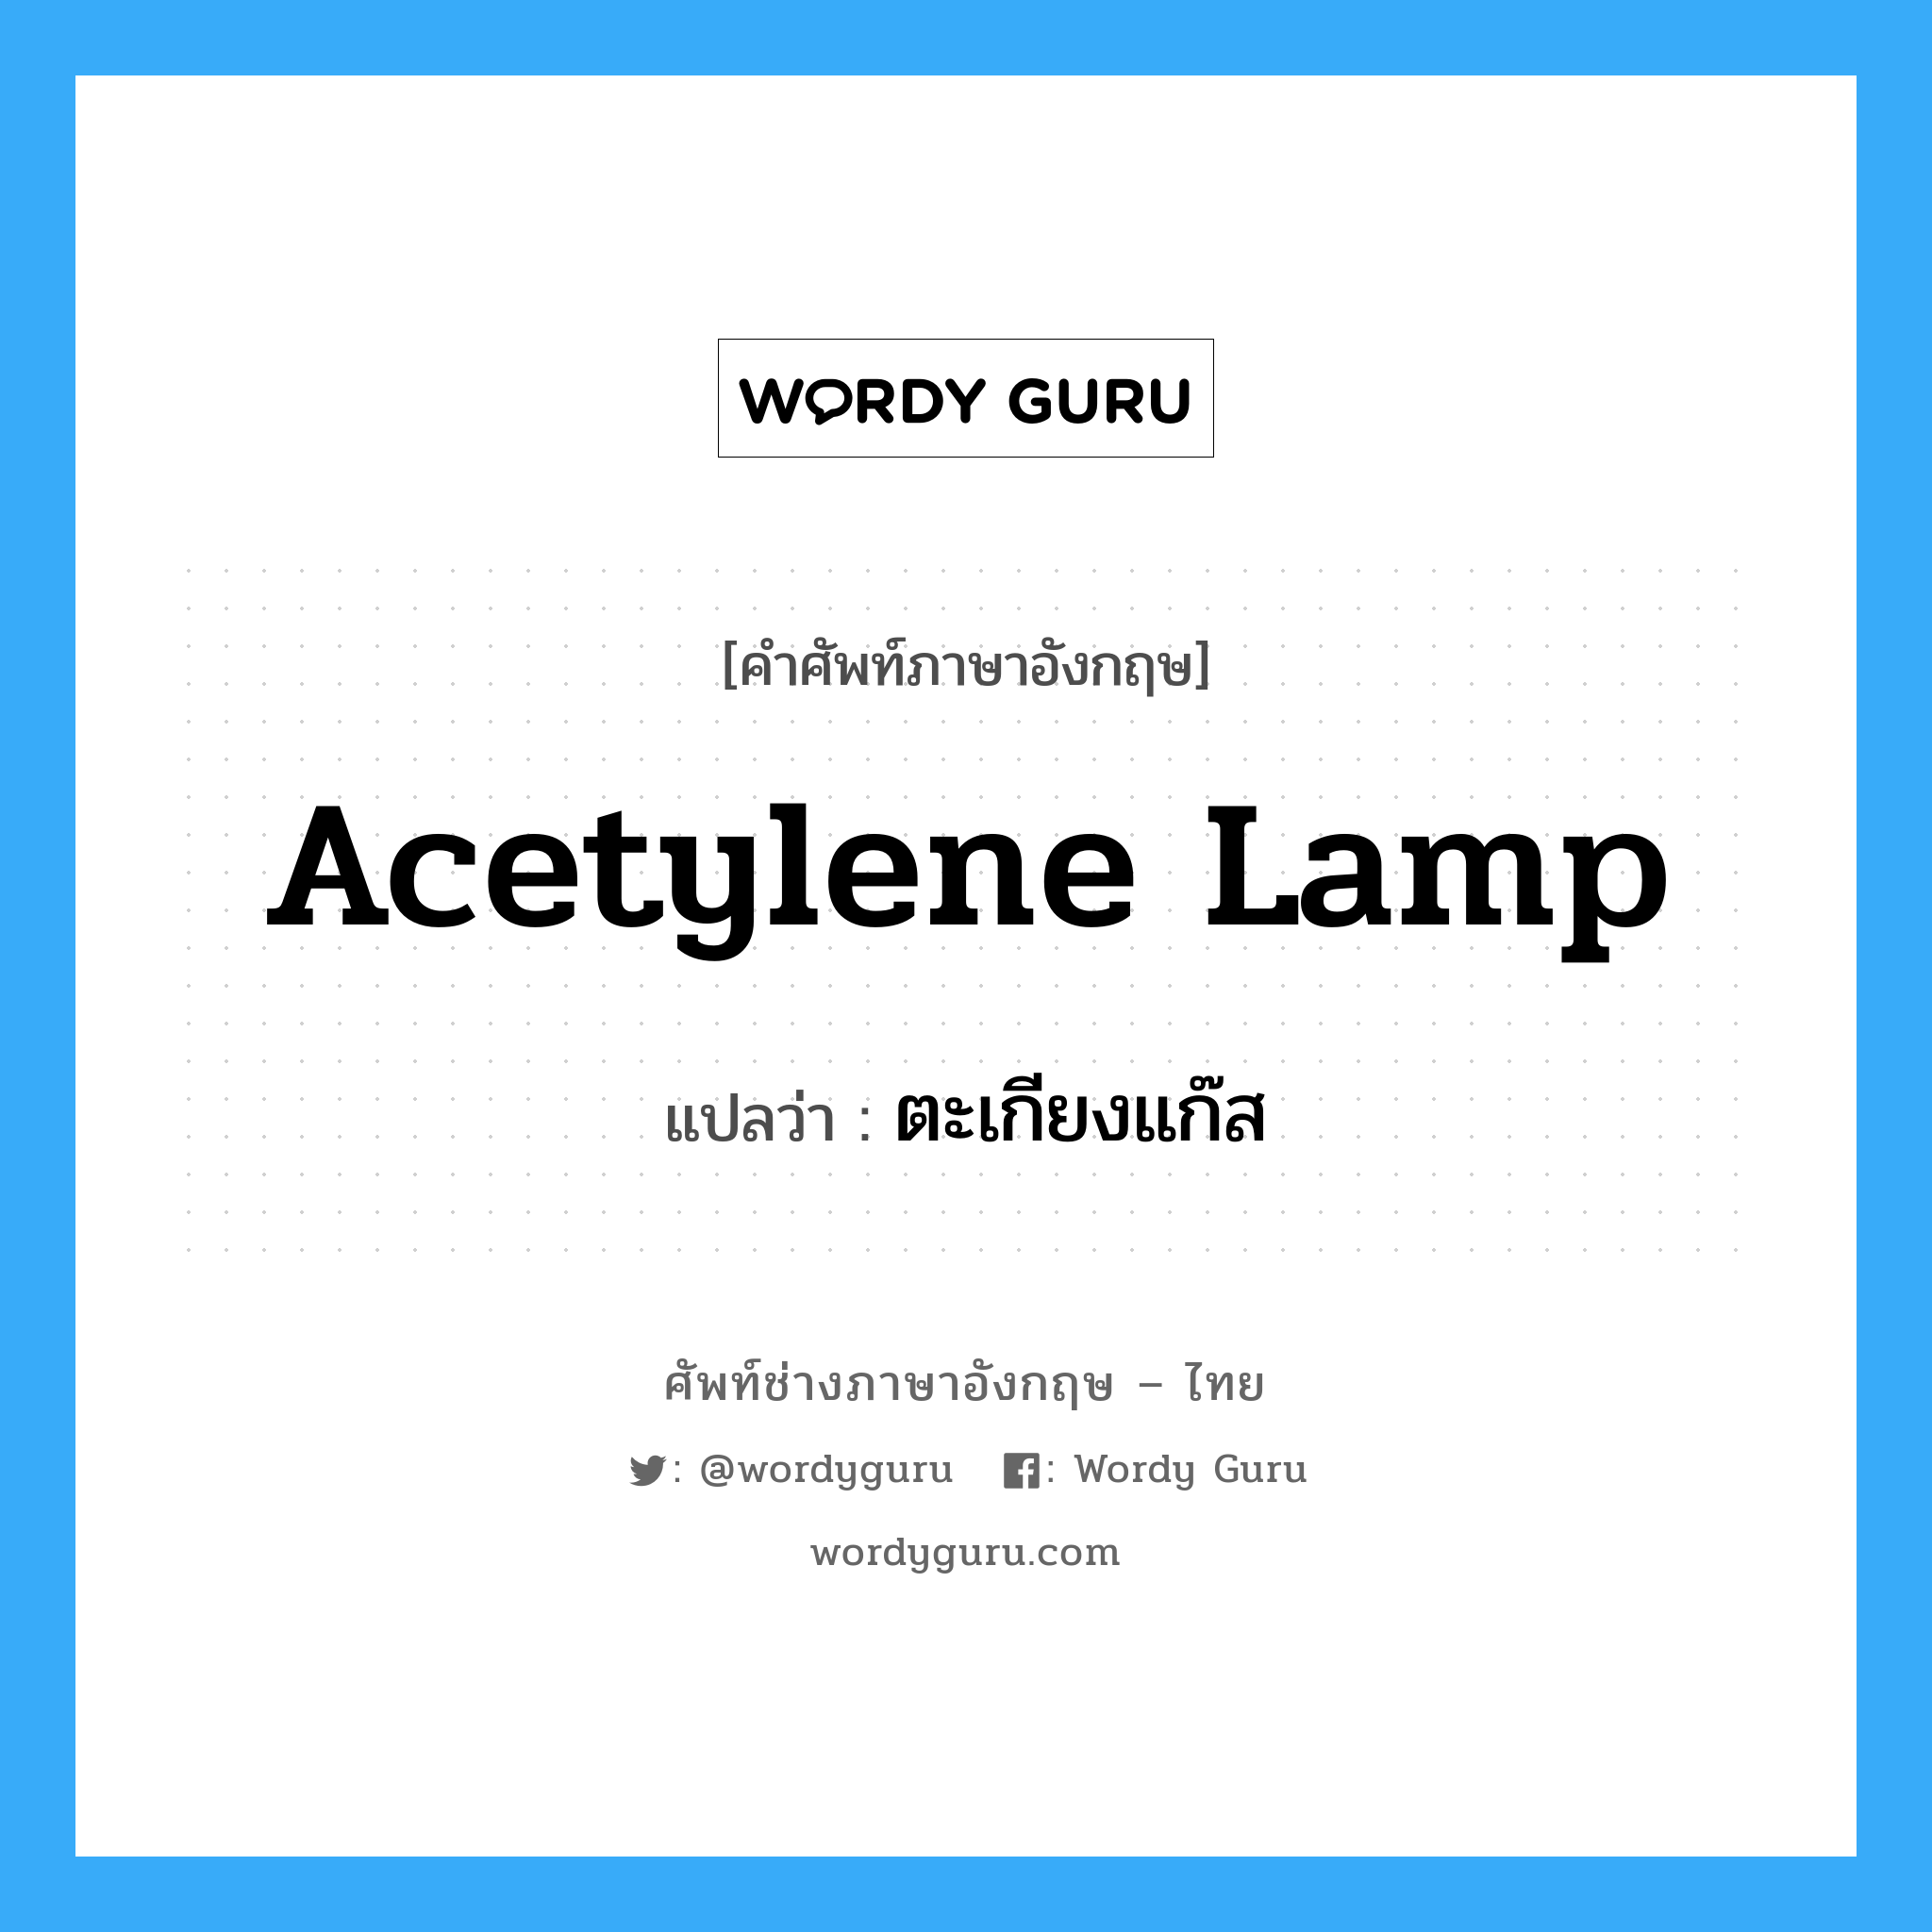 acetylene lamp แปลว่า?, คำศัพท์ช่างภาษาอังกฤษ - ไทย acetylene lamp คำศัพท์ภาษาอังกฤษ acetylene lamp แปลว่า ตะเกียงแก๊ส